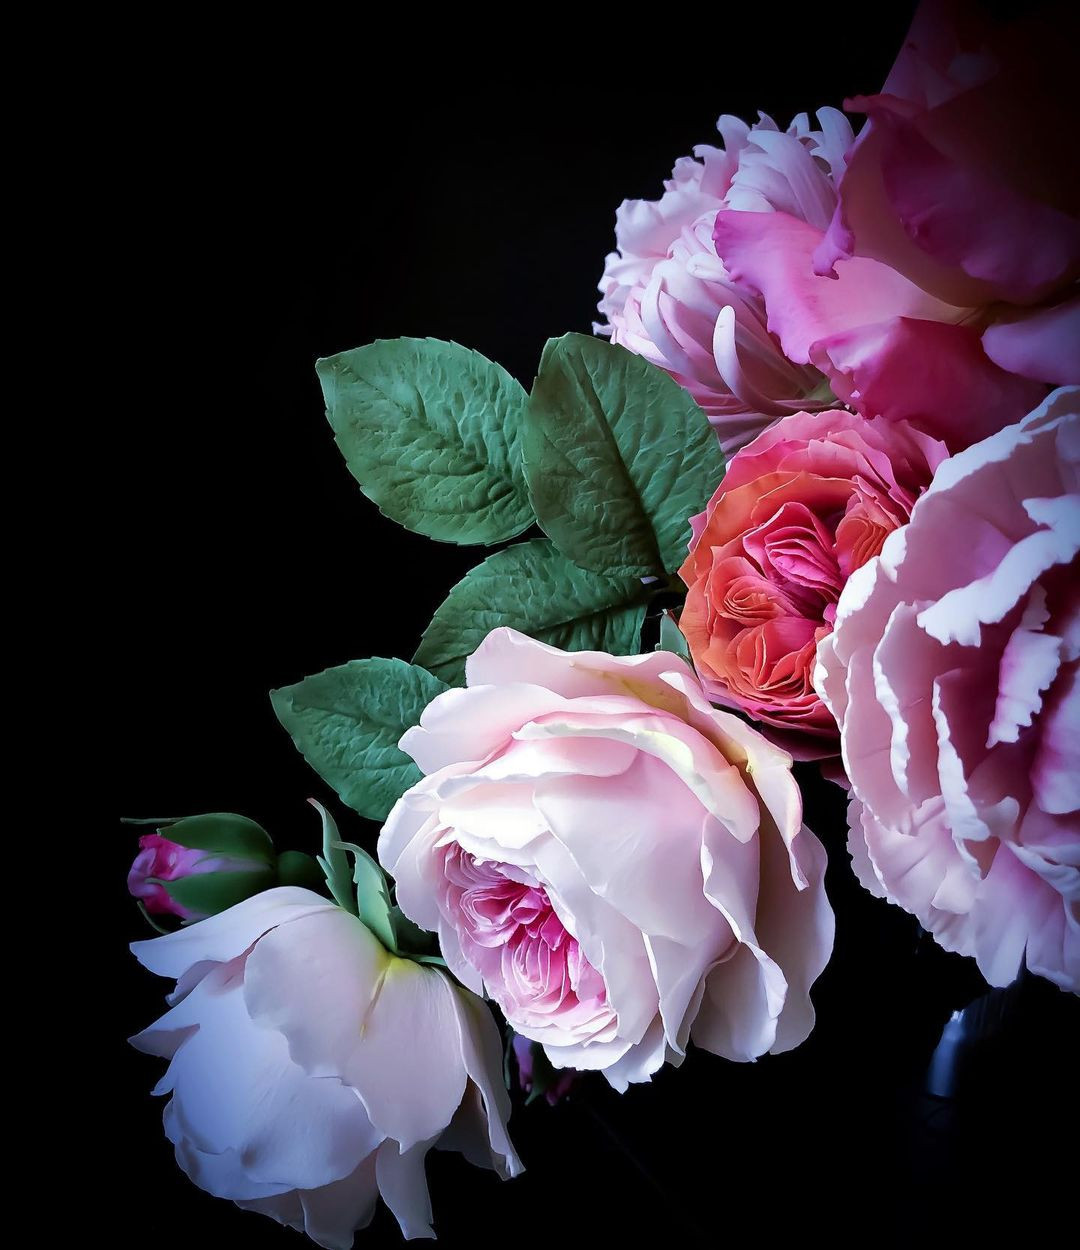 Сахарные цветы от Мишель Нгуен, которые выглядят очень реалистично